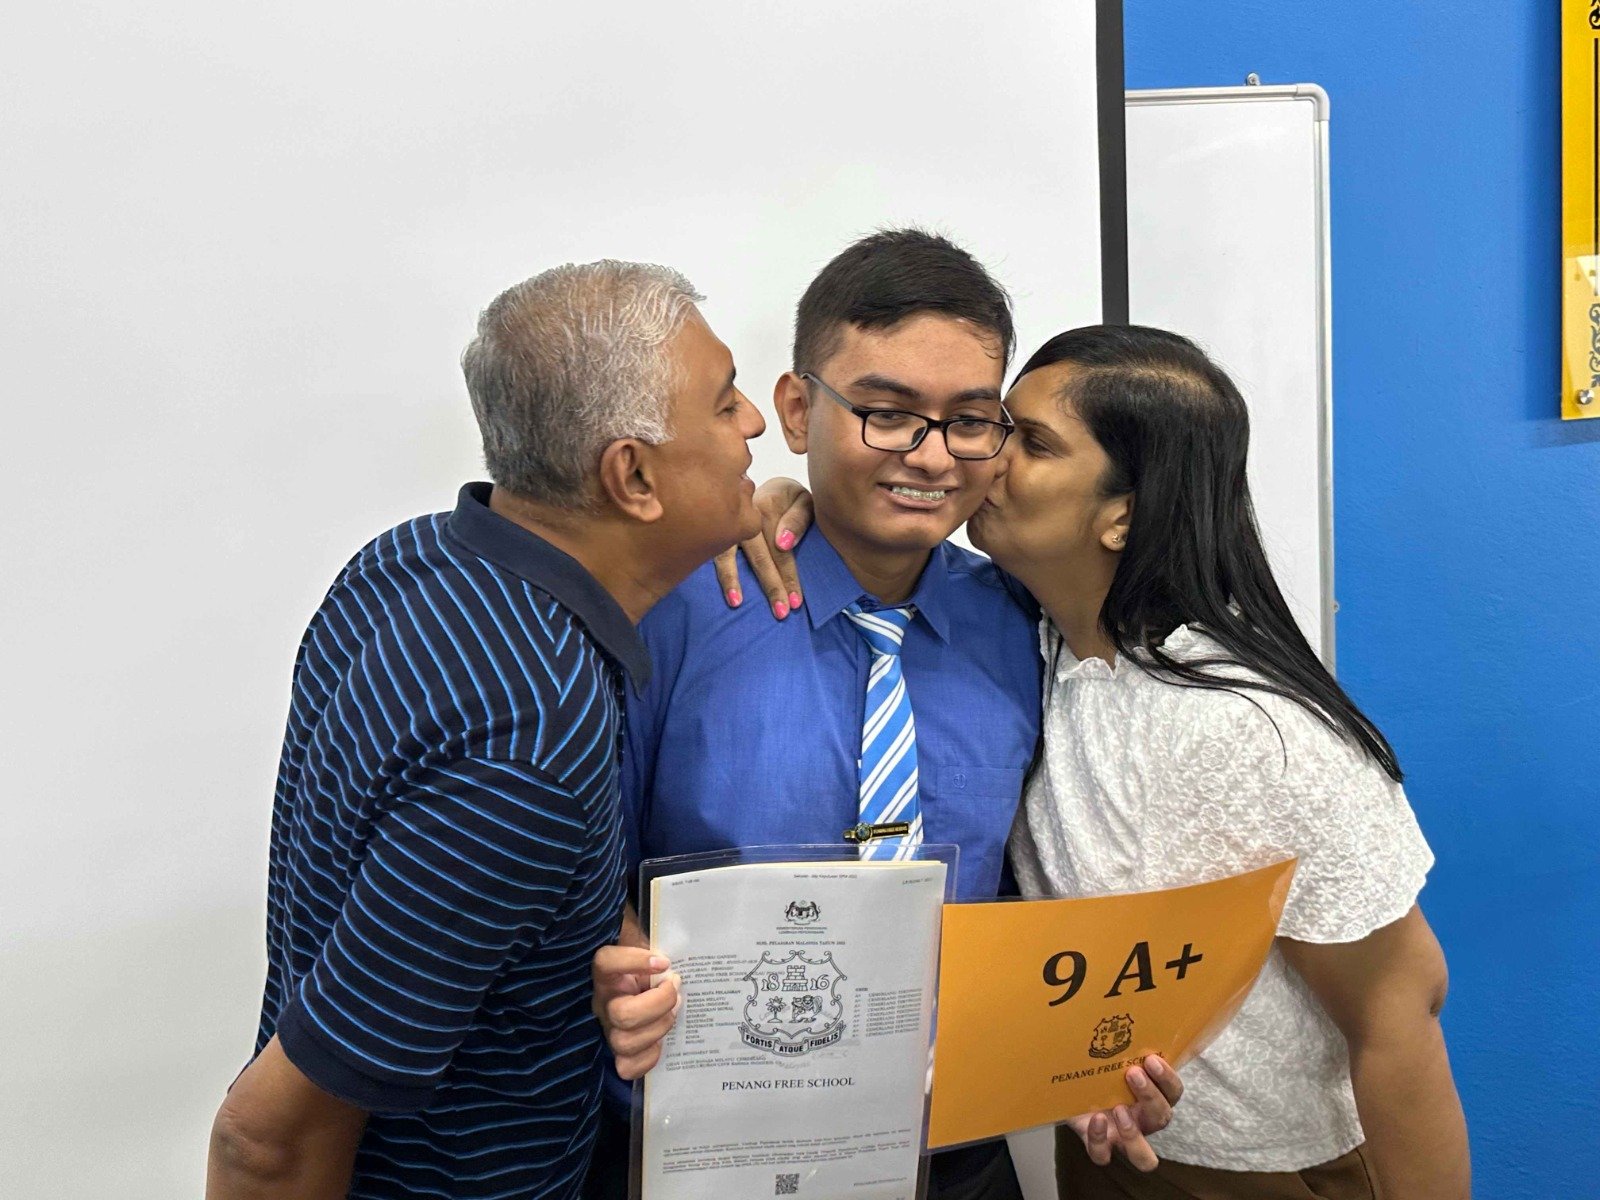 布文拉（中）在SPM考获9A+佳绩，其父亲嘉纳森（左起）及母亲苏米达向爱儿献吻。布文拉（左2）周四在父母及爷爷陪同下，前往母校槟城大英义中学，领取SPM成绩单。